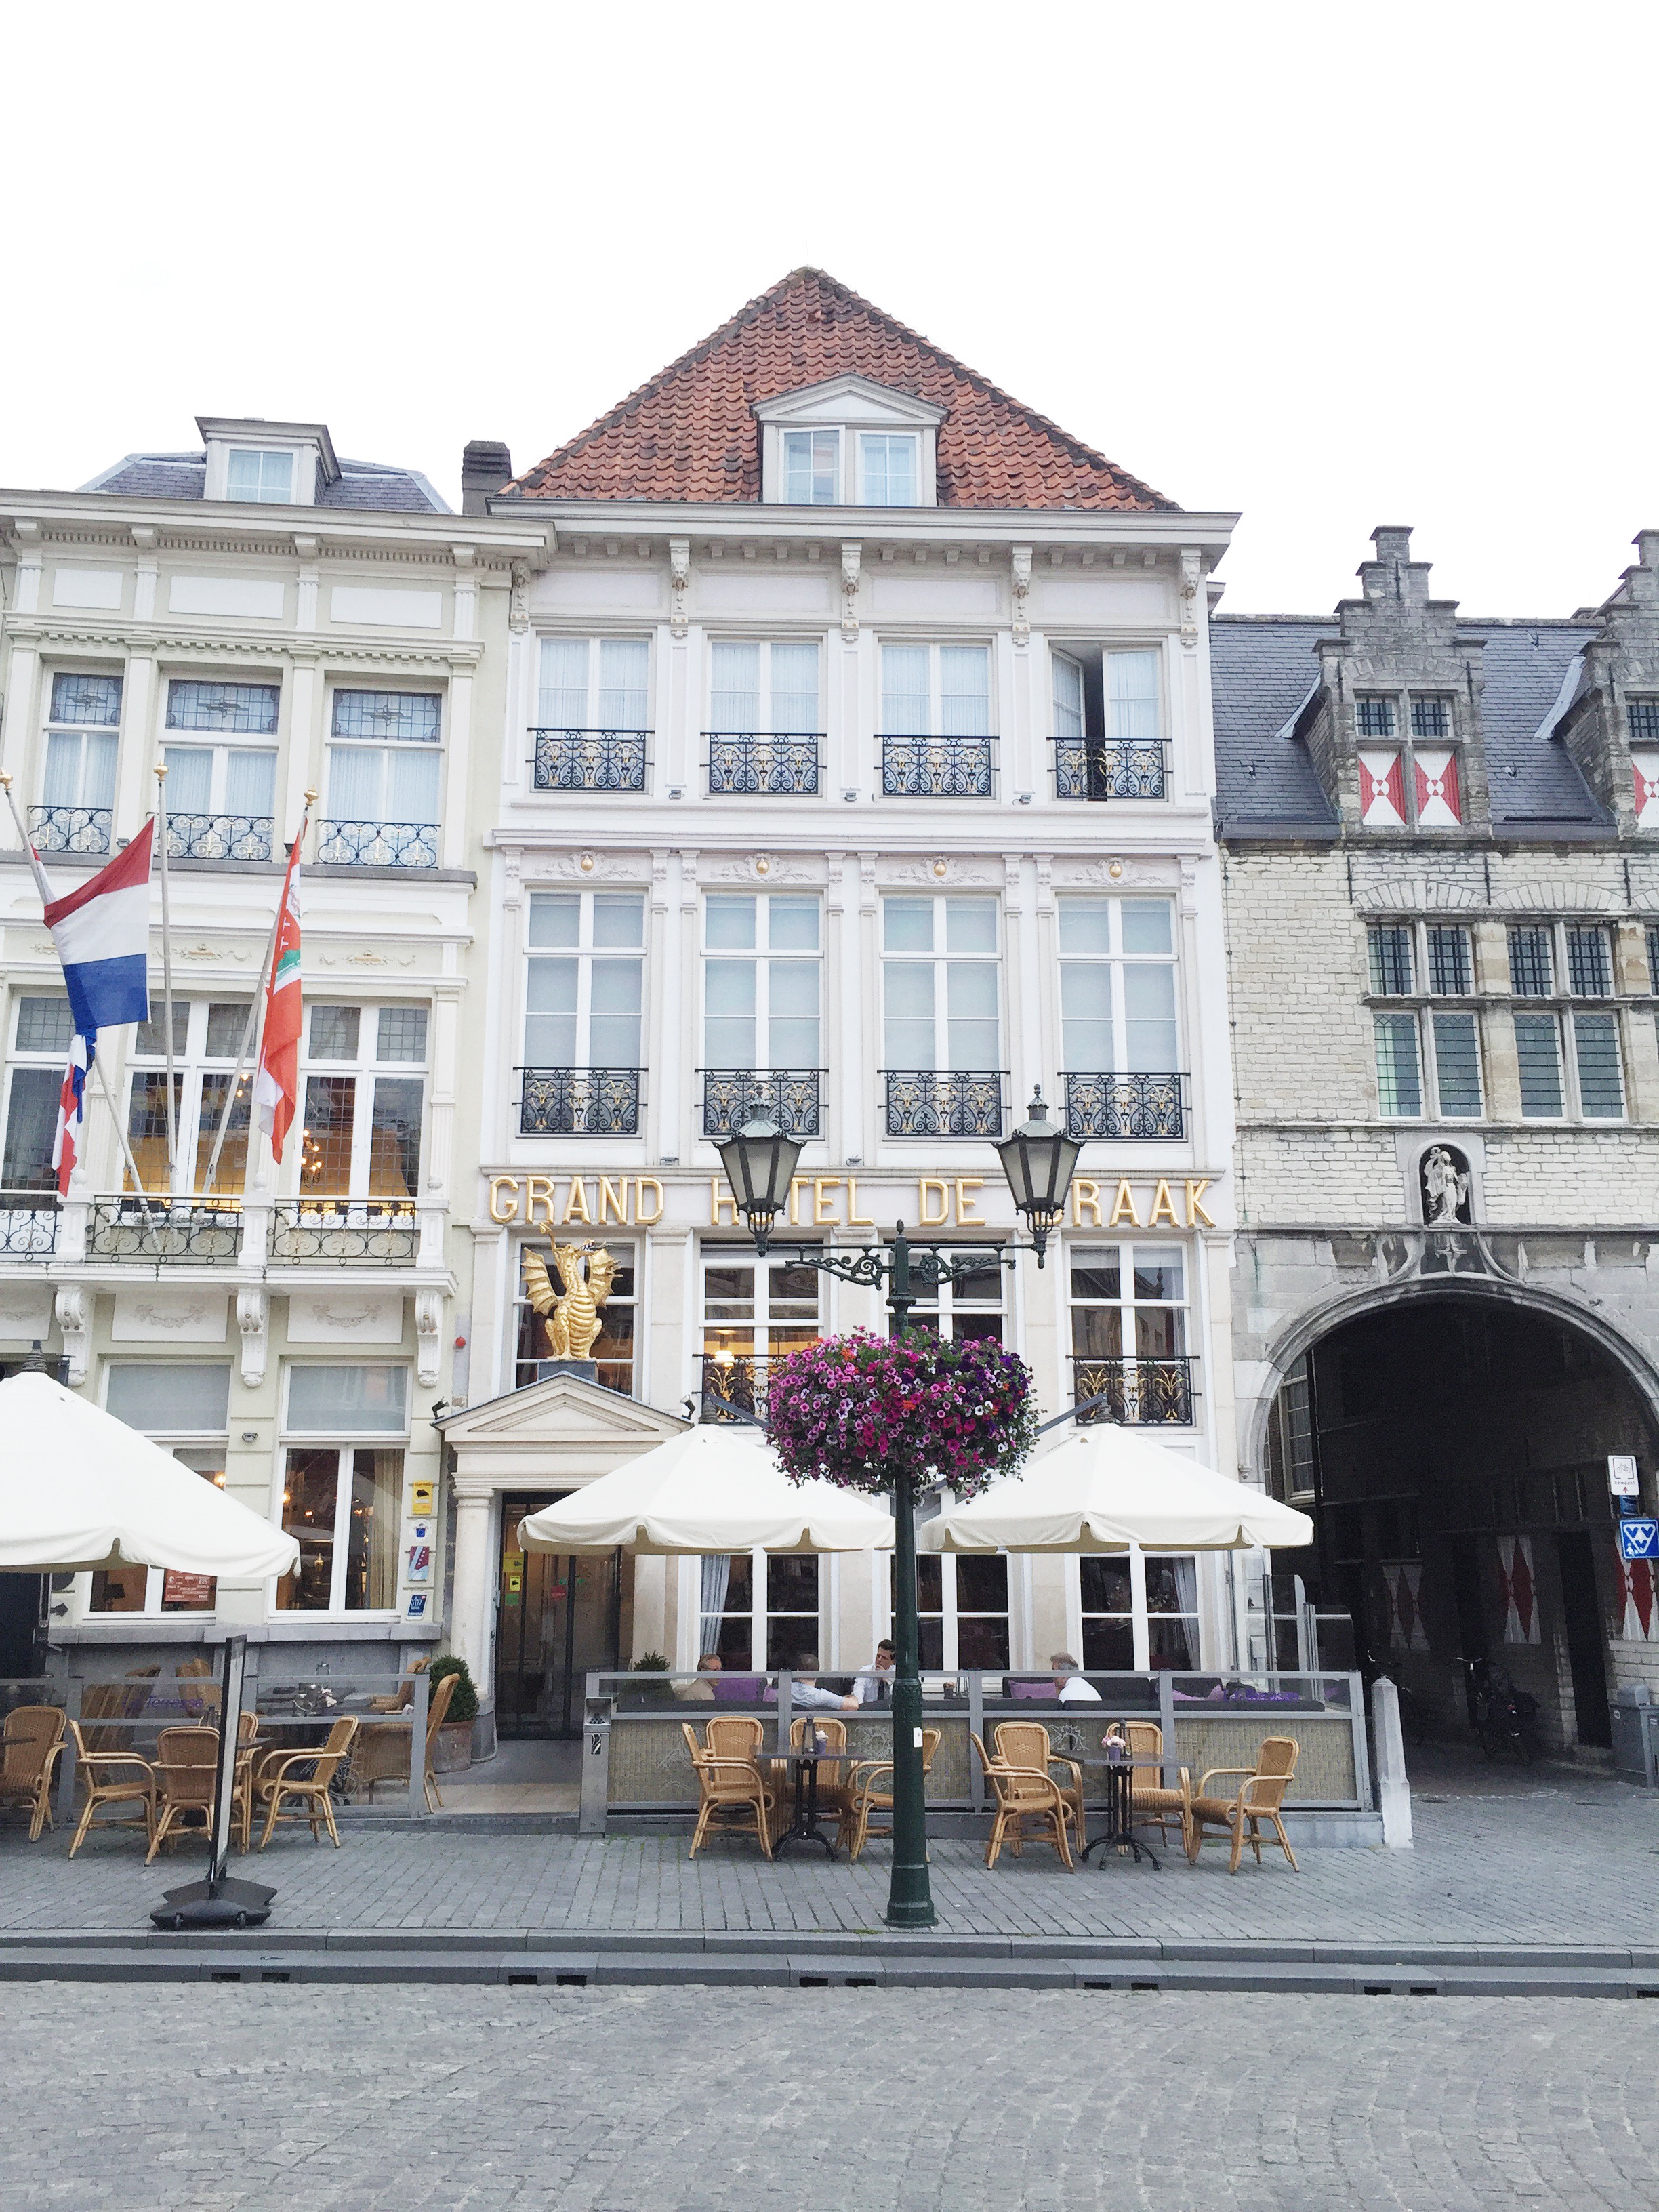 Restaurants Bergen op Zoom: 10x de lekkerste hotspots made by ellen